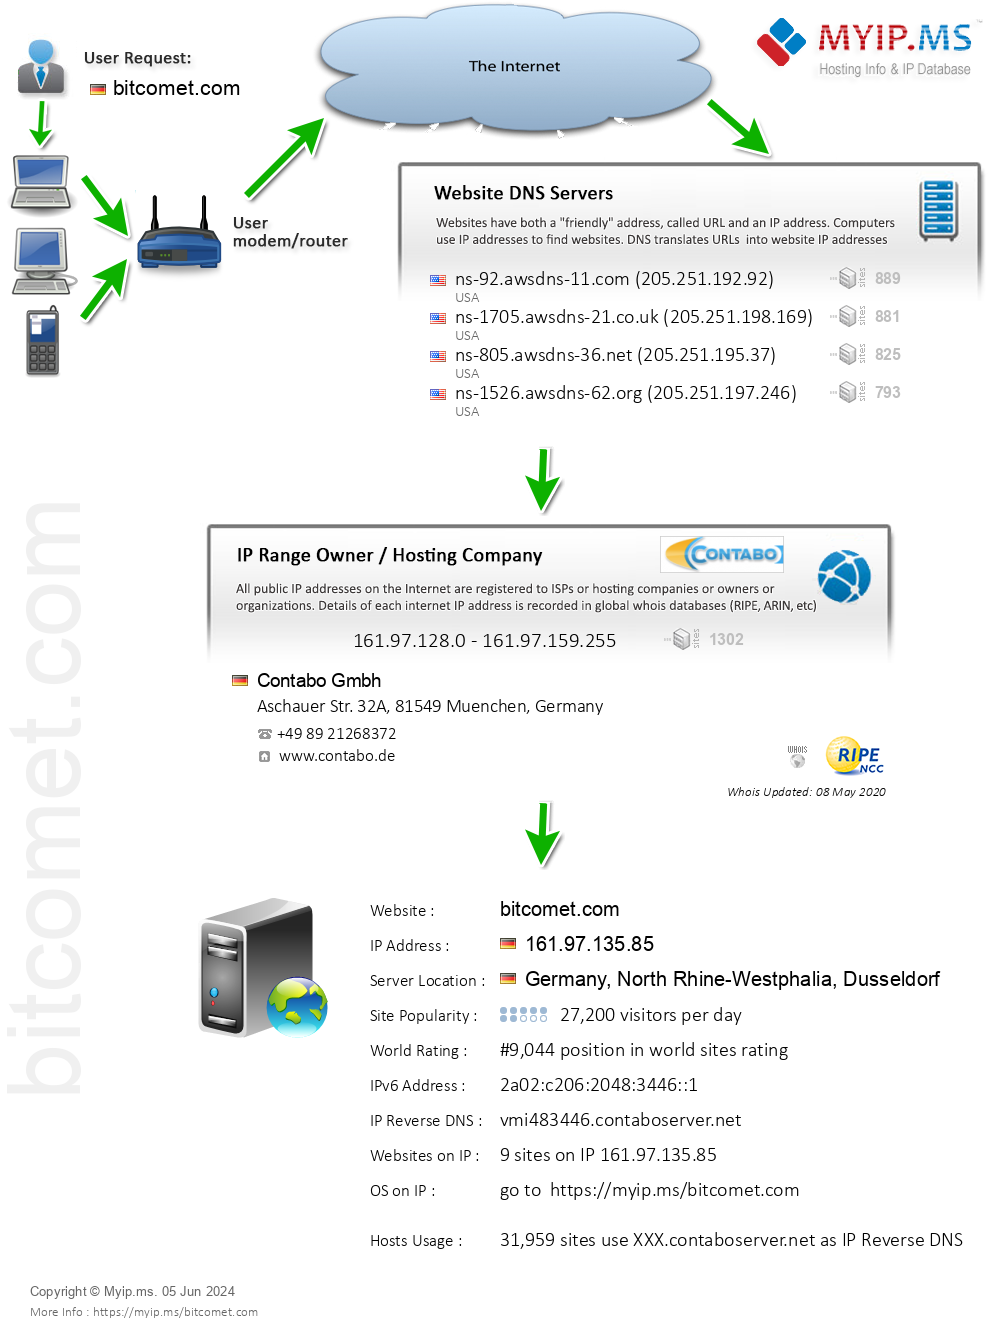 Bitcomet.com - Website Hosting Visual IP Diagram